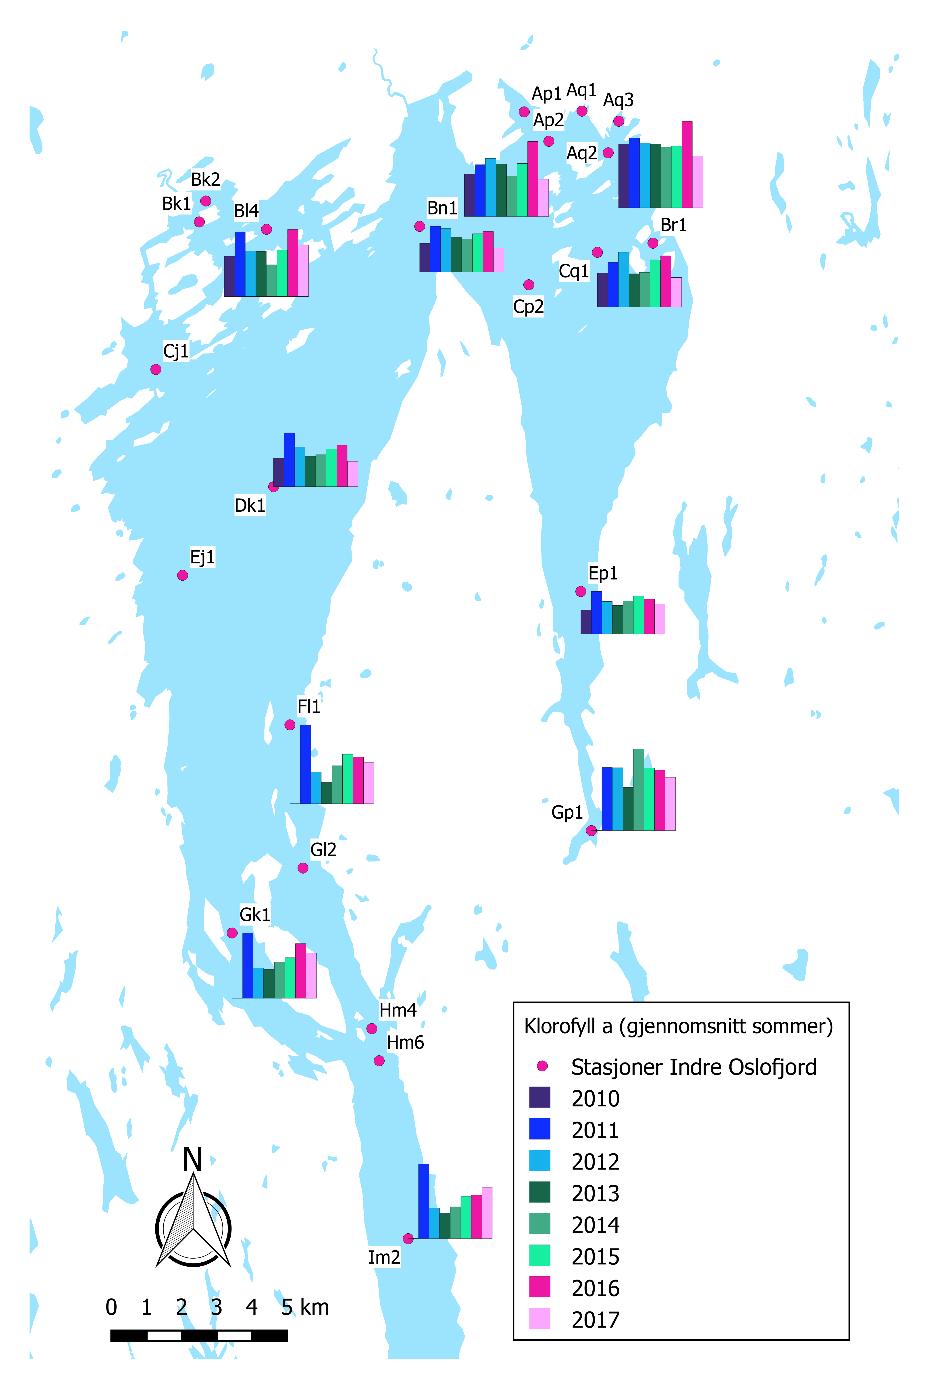 Figur 8. Årlige variasjoner i gjennomsnittlig konsentrasjon av klorofyll a i sommermånedene (juni-august) i perioden 2010-2017 på utvalgte stasjoner i Indre Oslofjord.